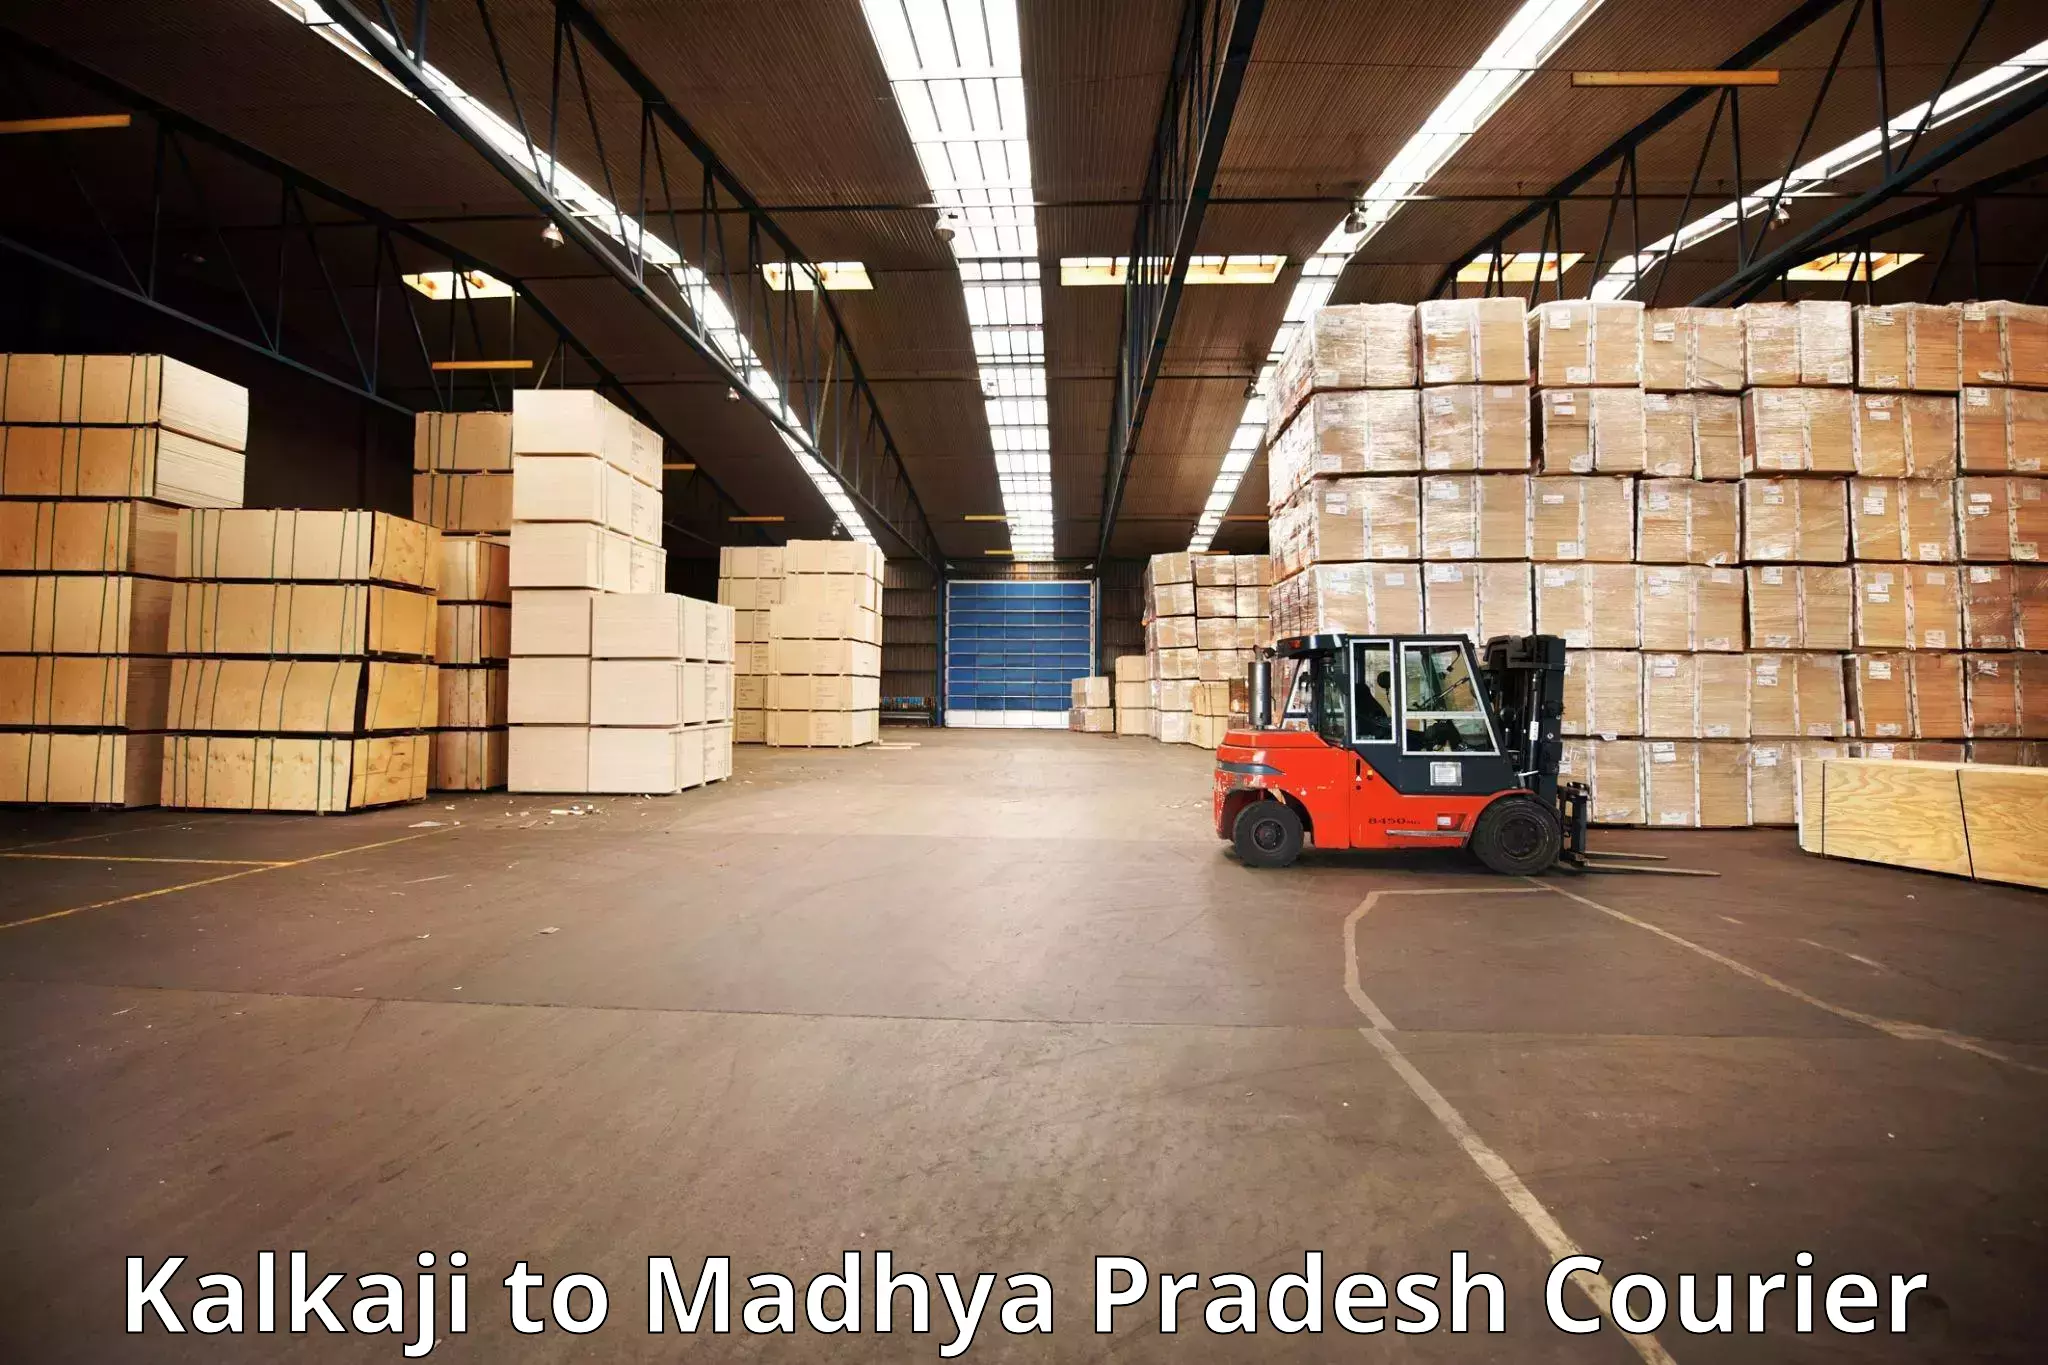 Baggage relocation service Kalkaji to Madhya Pradesh